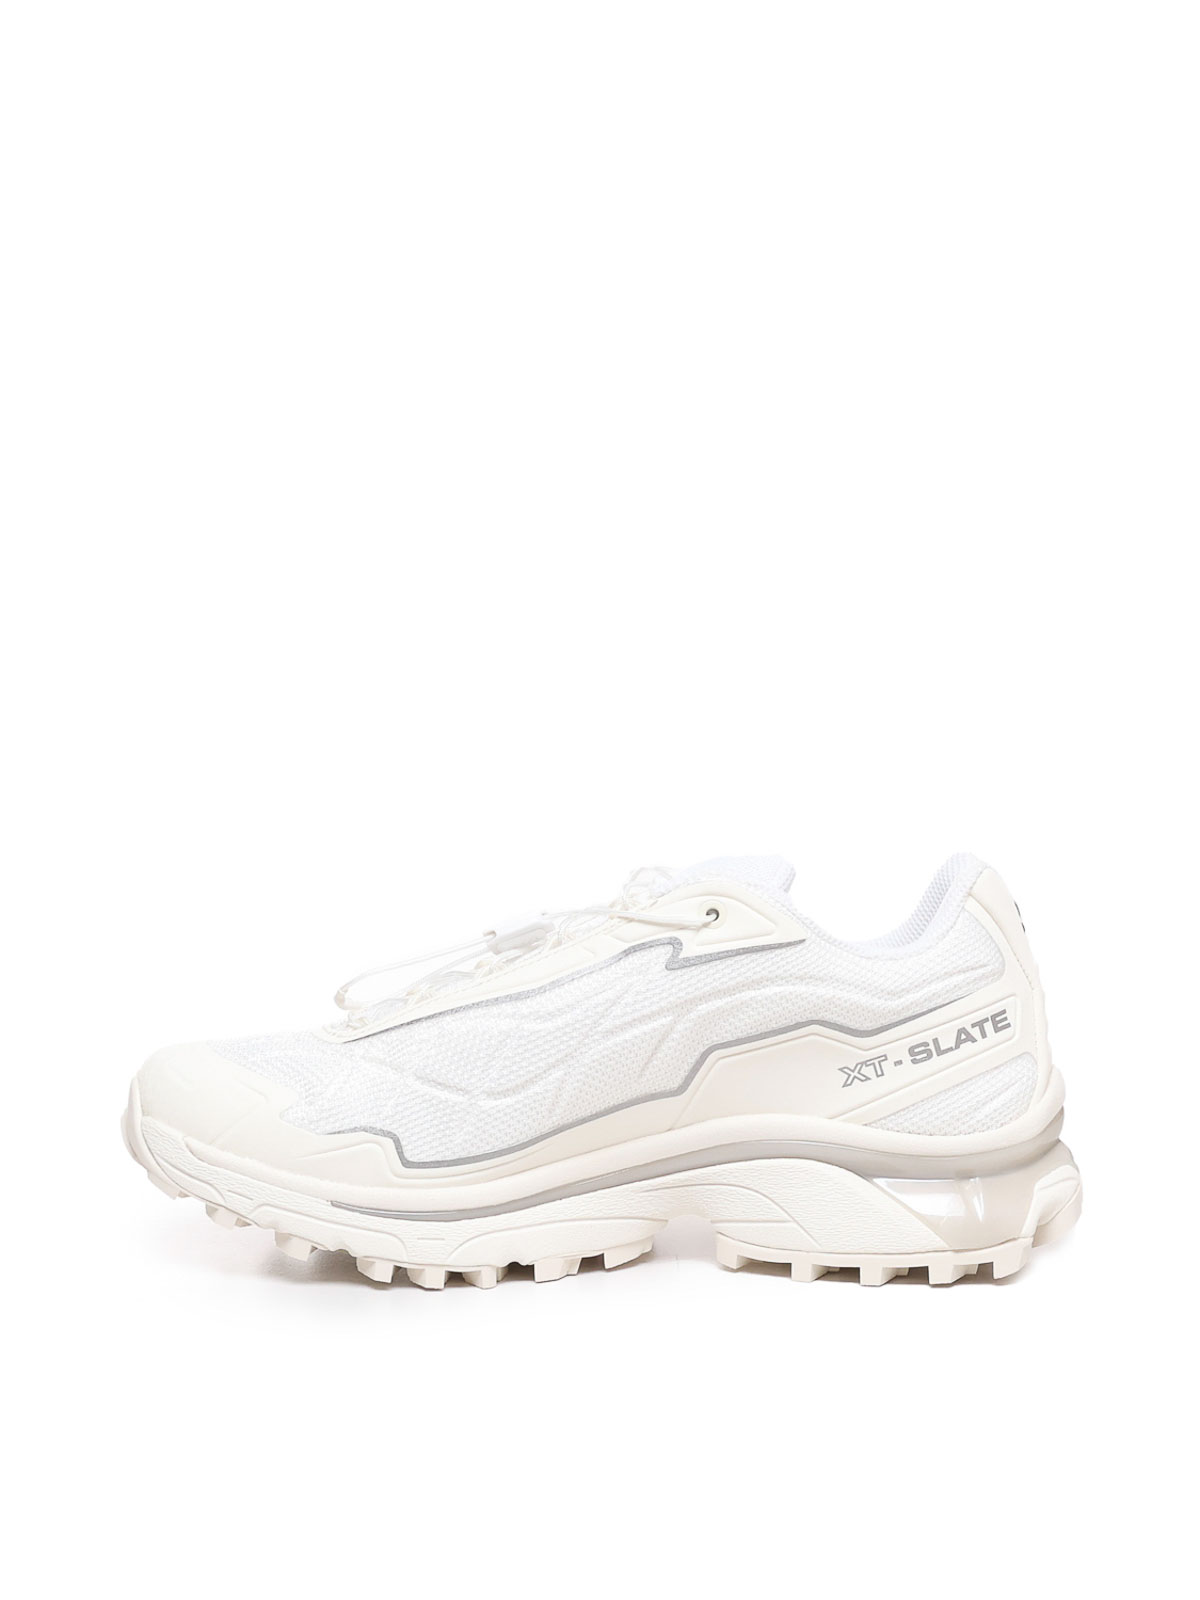 Shop Salomon Xt-slate Sneakers In Blanco